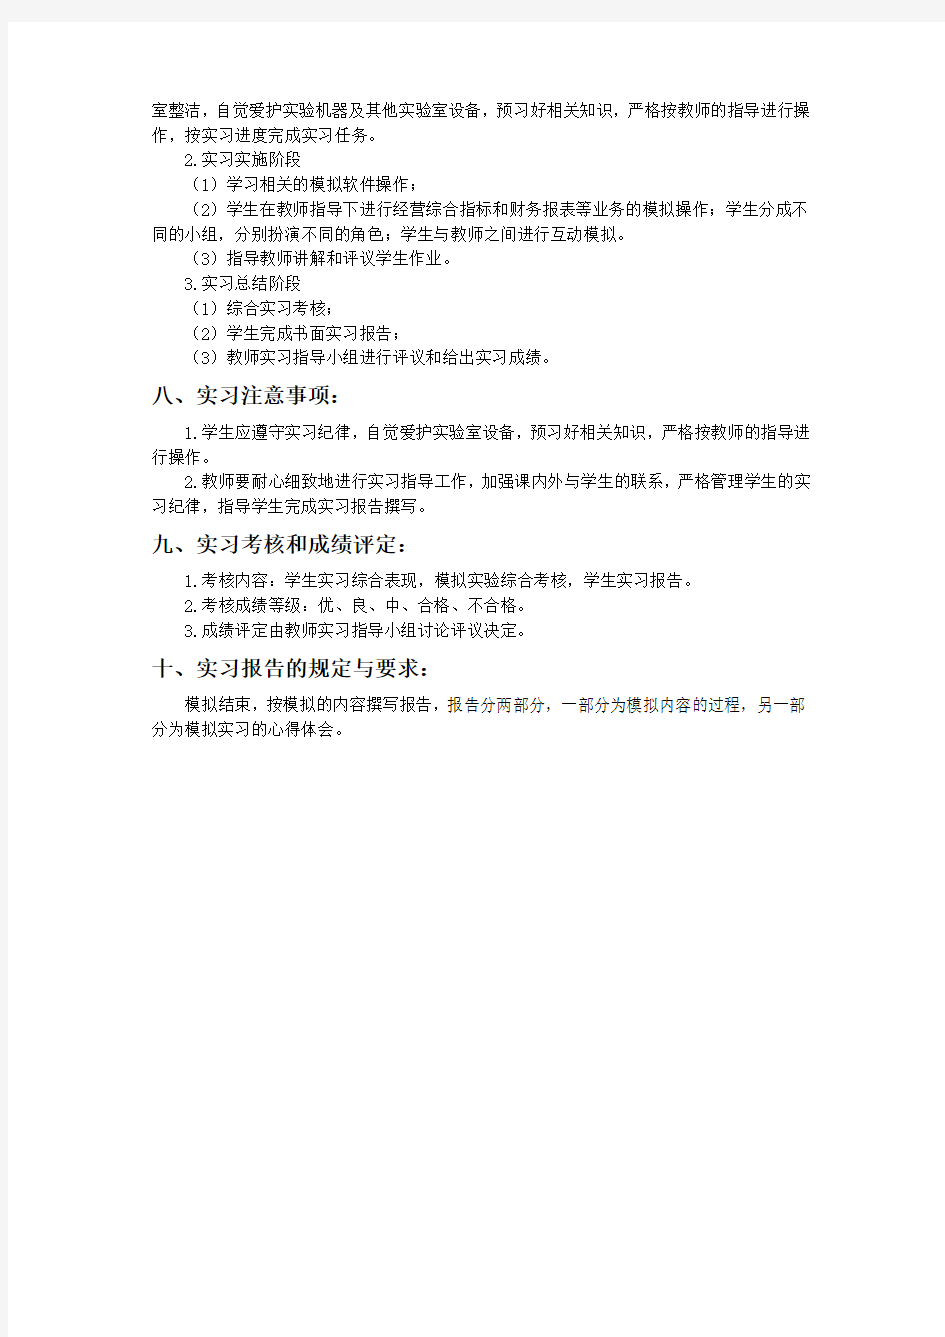 上海海事大学 考试大纲 企业经营综合模拟实践_JG427230